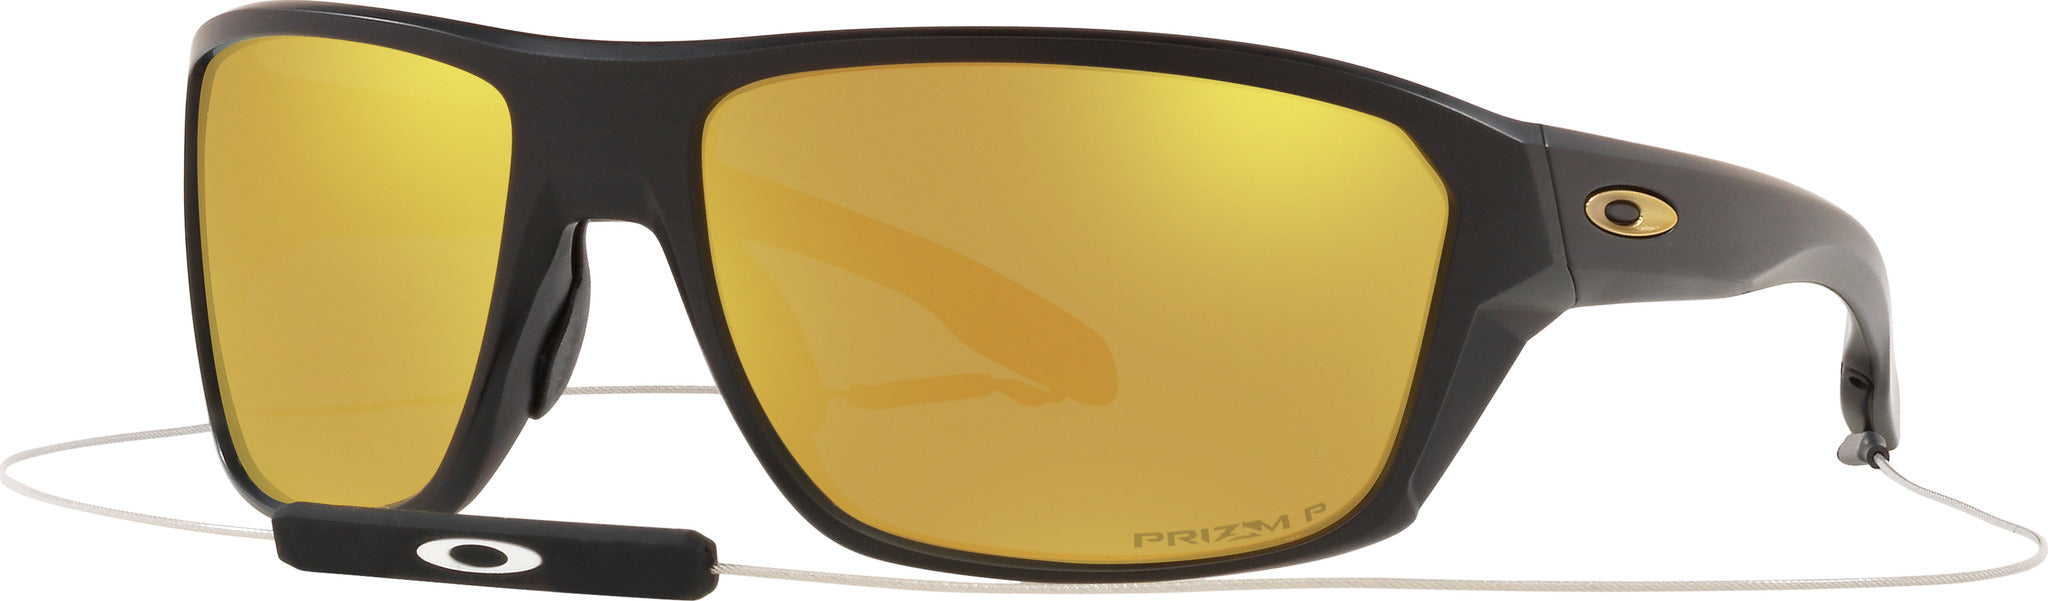 Oakley Split Shot Sunglasses - Matte Black - Prizm 24K Iridium